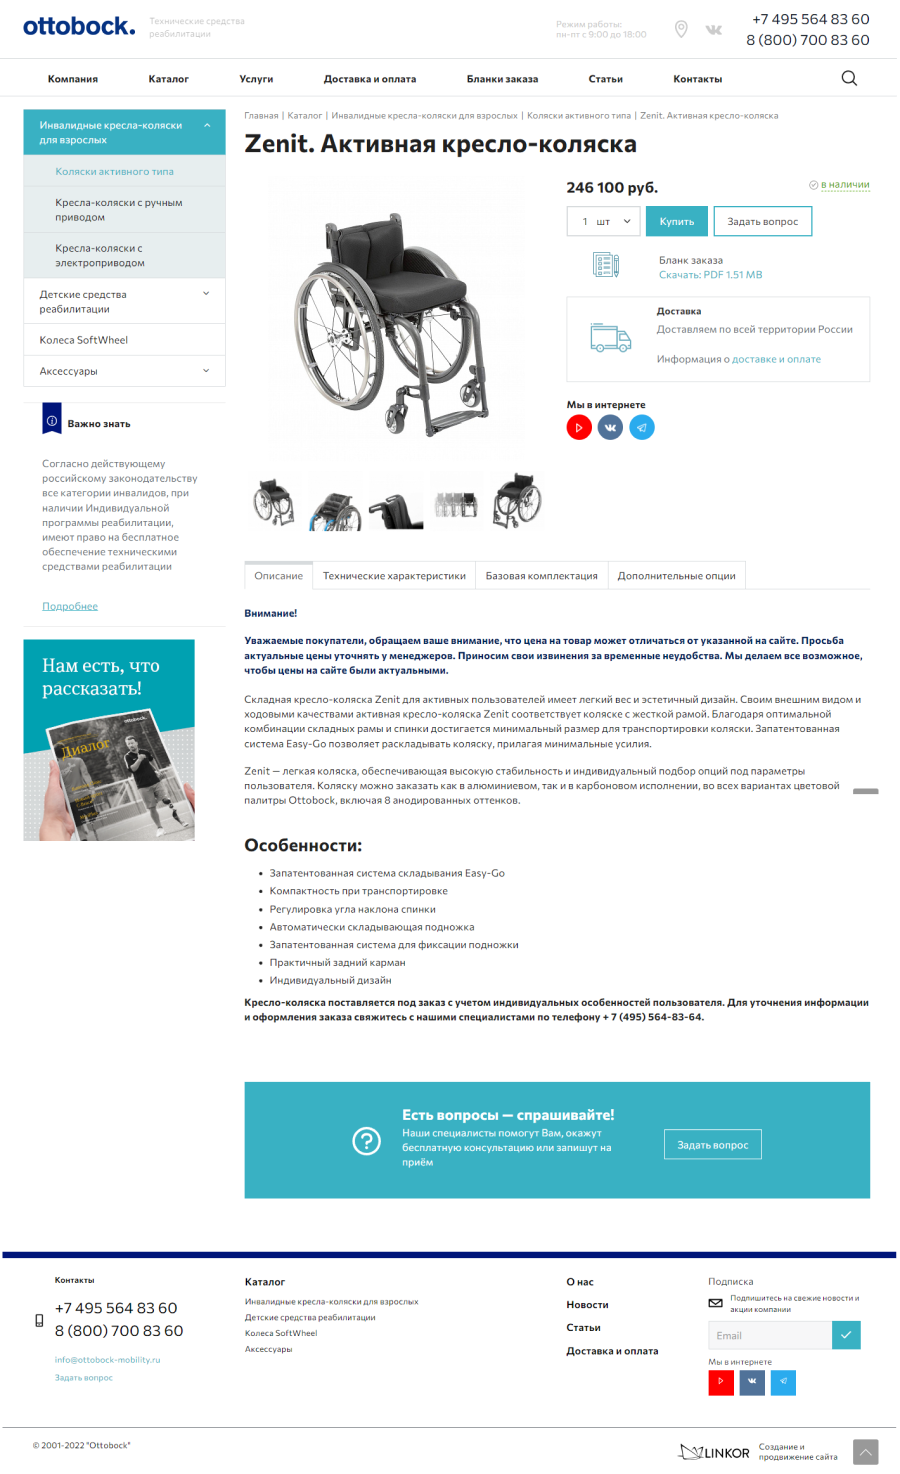 кейс: разработка интернет-магазина инвалидных колясок